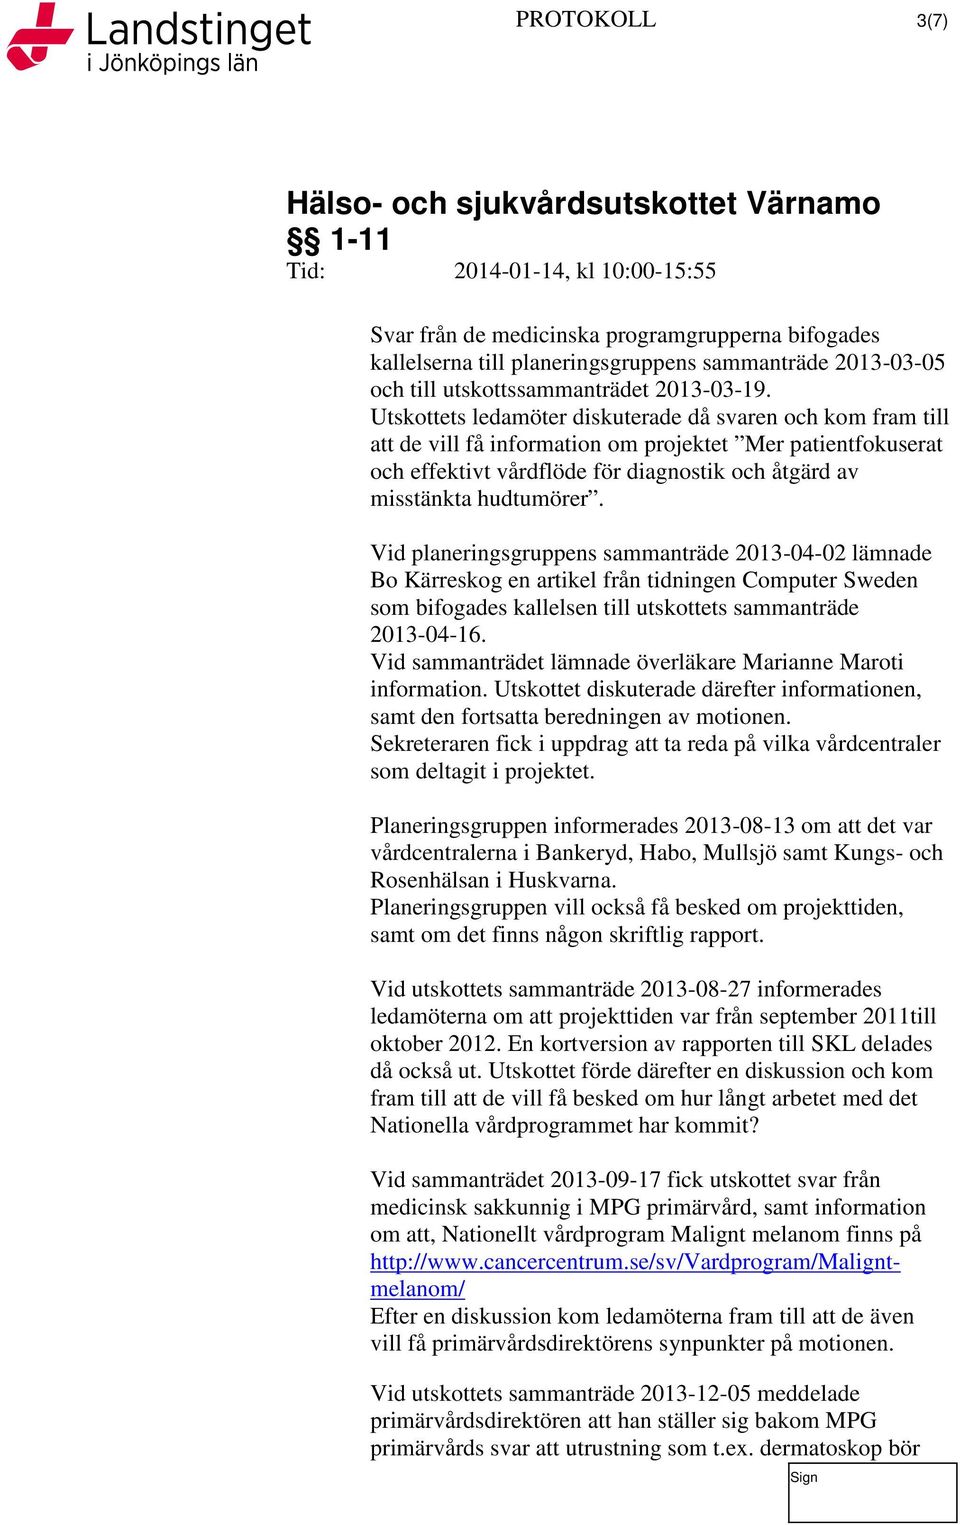 Vid planeringsgruppens sammanträde 2013-04-02 lämnade Bo Kärreskog en artikel från tidningen Computer Sweden som bifogades kallelsen till utskottets sammanträde 2013-04-16.